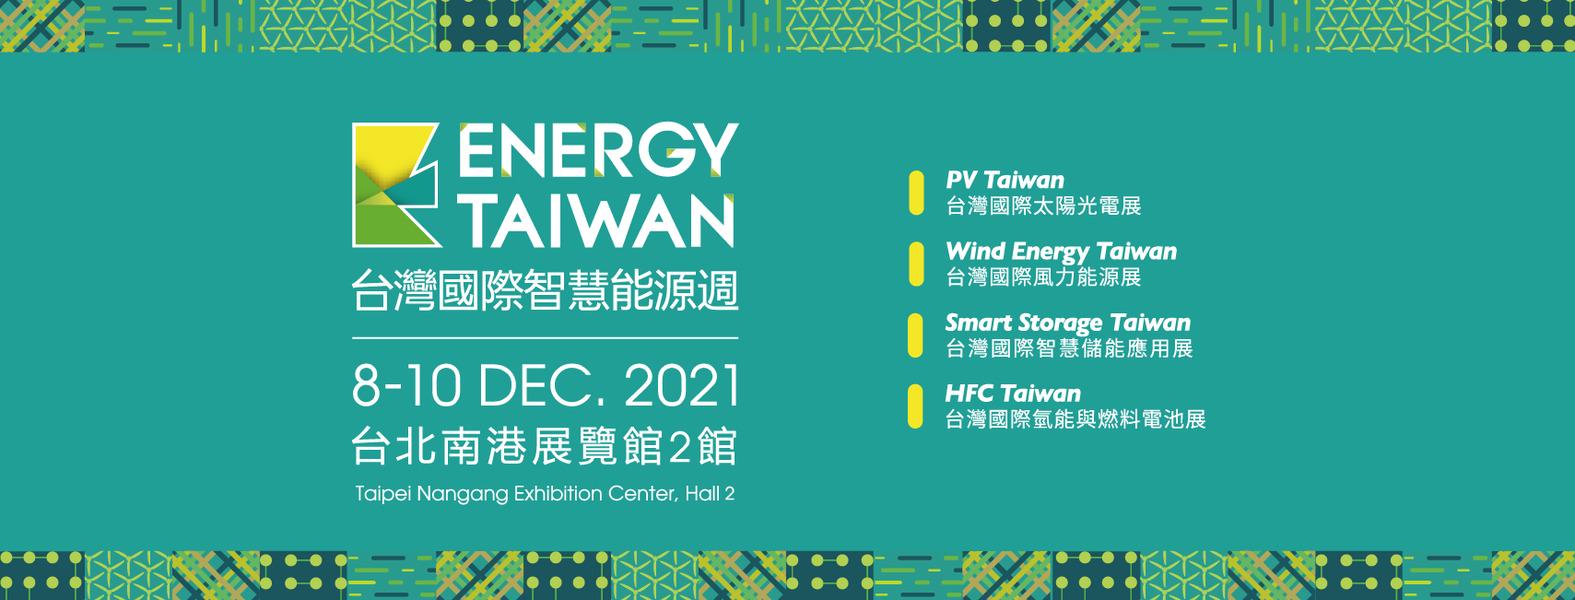 环保意识, 永续发展, 节能减碳, 再生能源, 风力发电, KingOne, 王一设计, 台湾国际智慧能源周, EnergyTaiwan